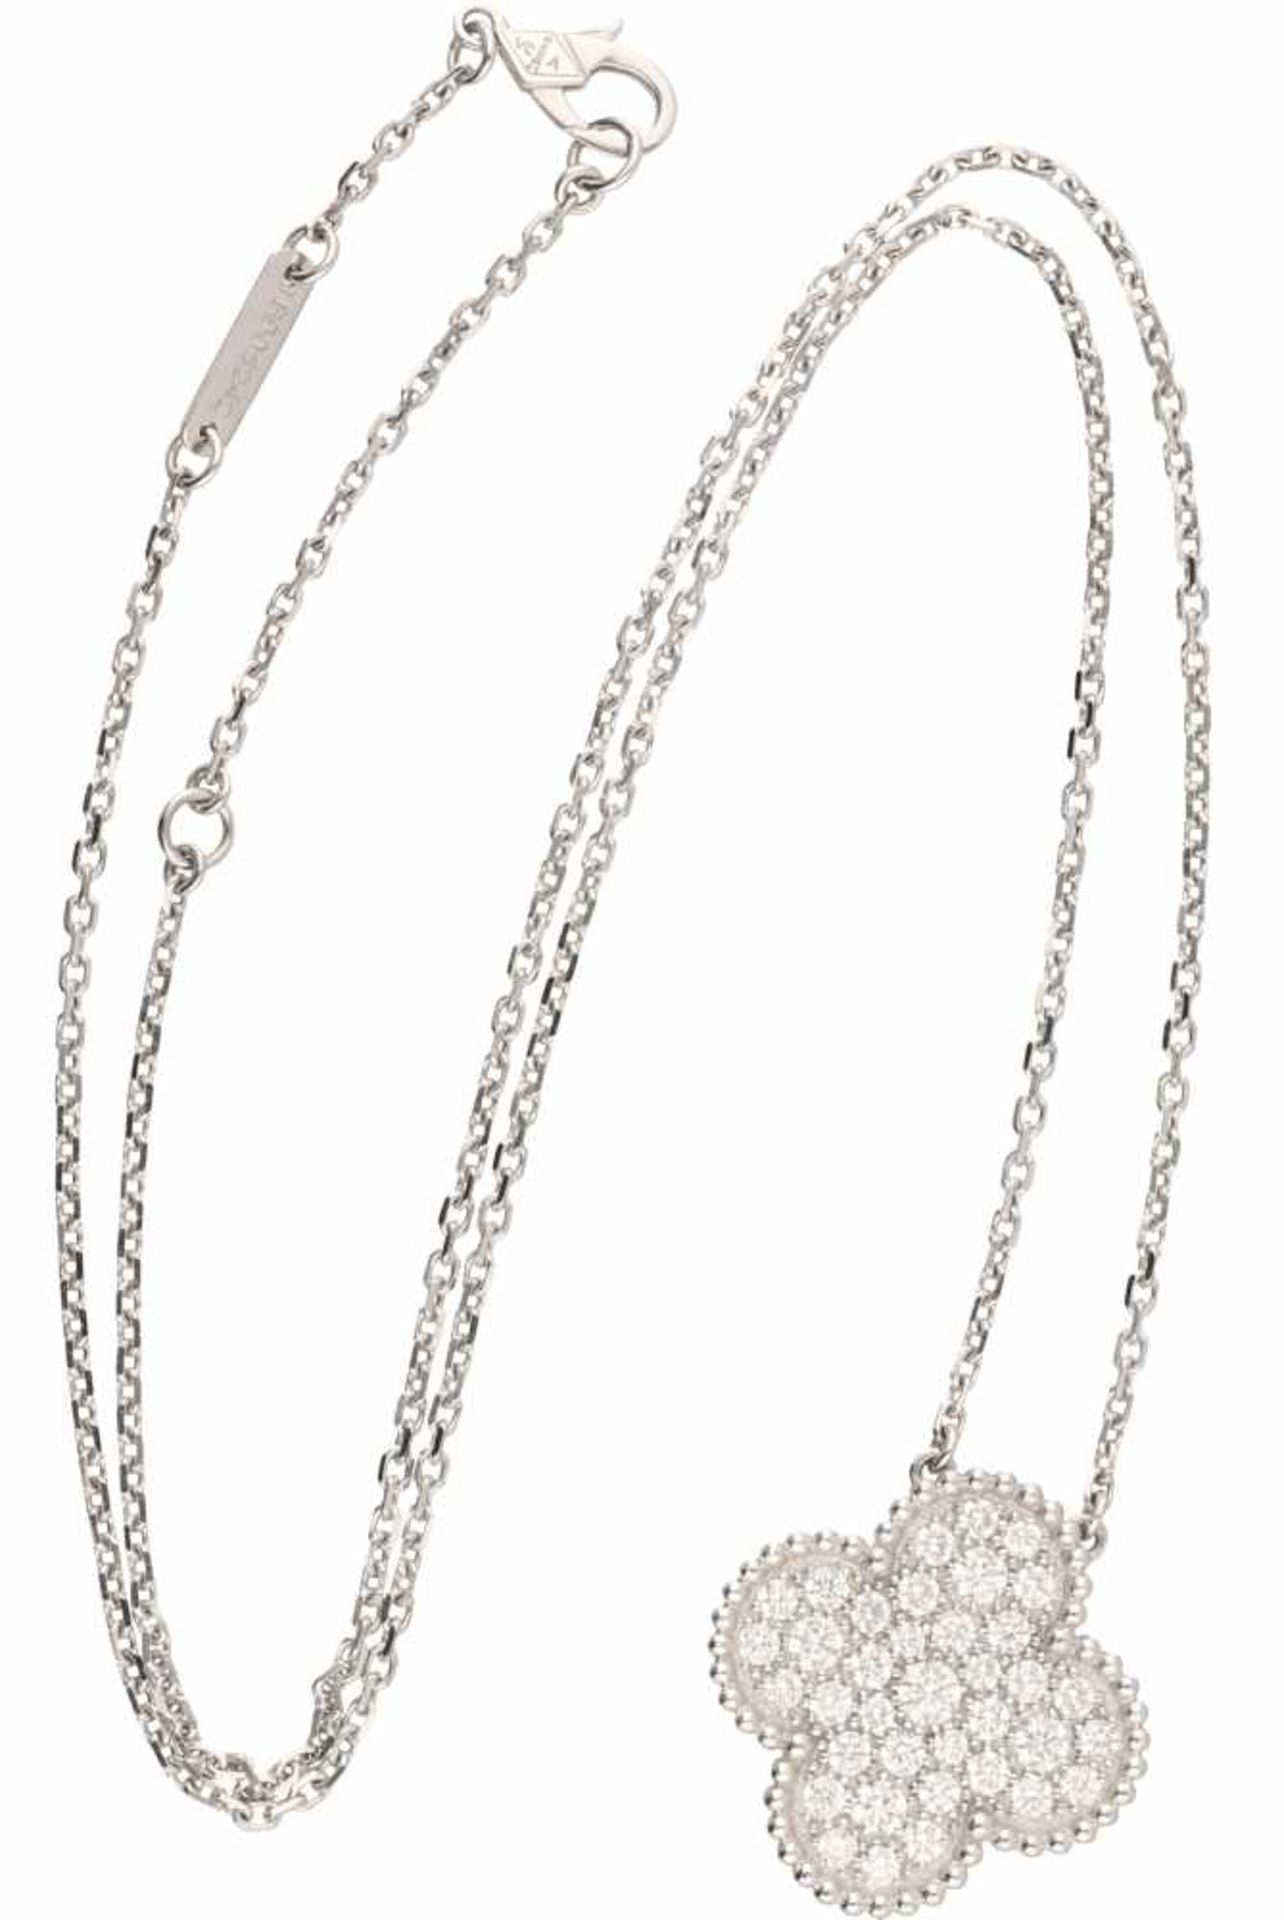 Van Cleef & Arpels necklace with Magic Alhambra pendant white gold, ca. 0.88 carat diamond - 18 ct. - Bild 4 aus 7